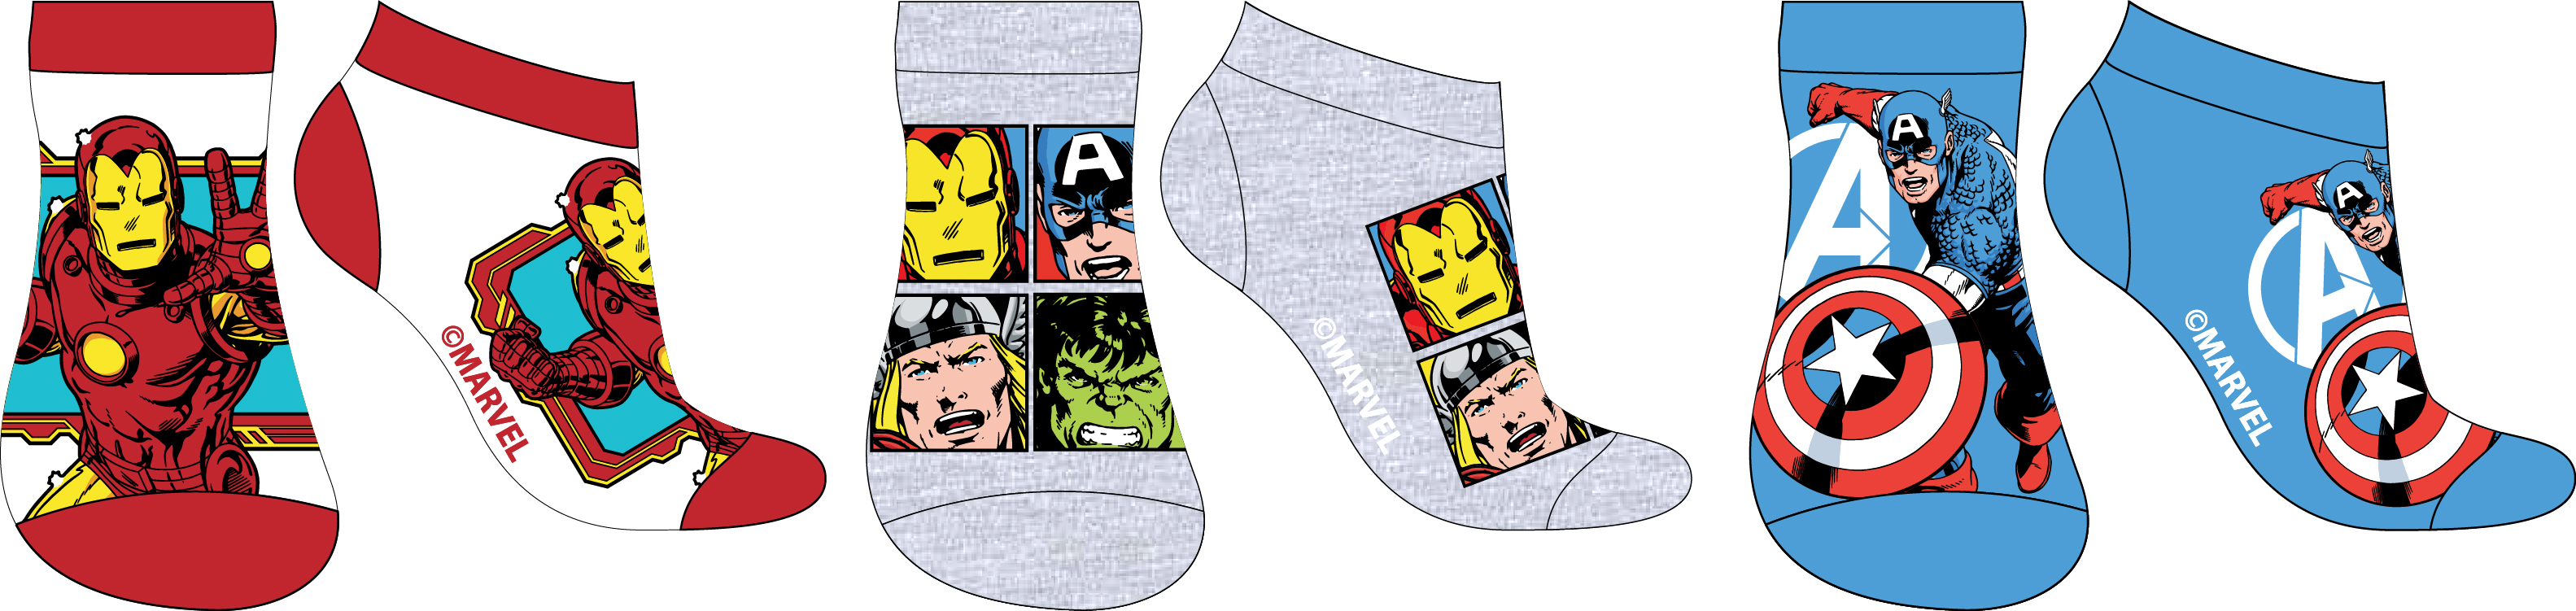 Avangers - licence Chlapecké kotníkové ponožky - Avengers 5234568, mix barev Barva: Mix barev, Velikost: 27-30